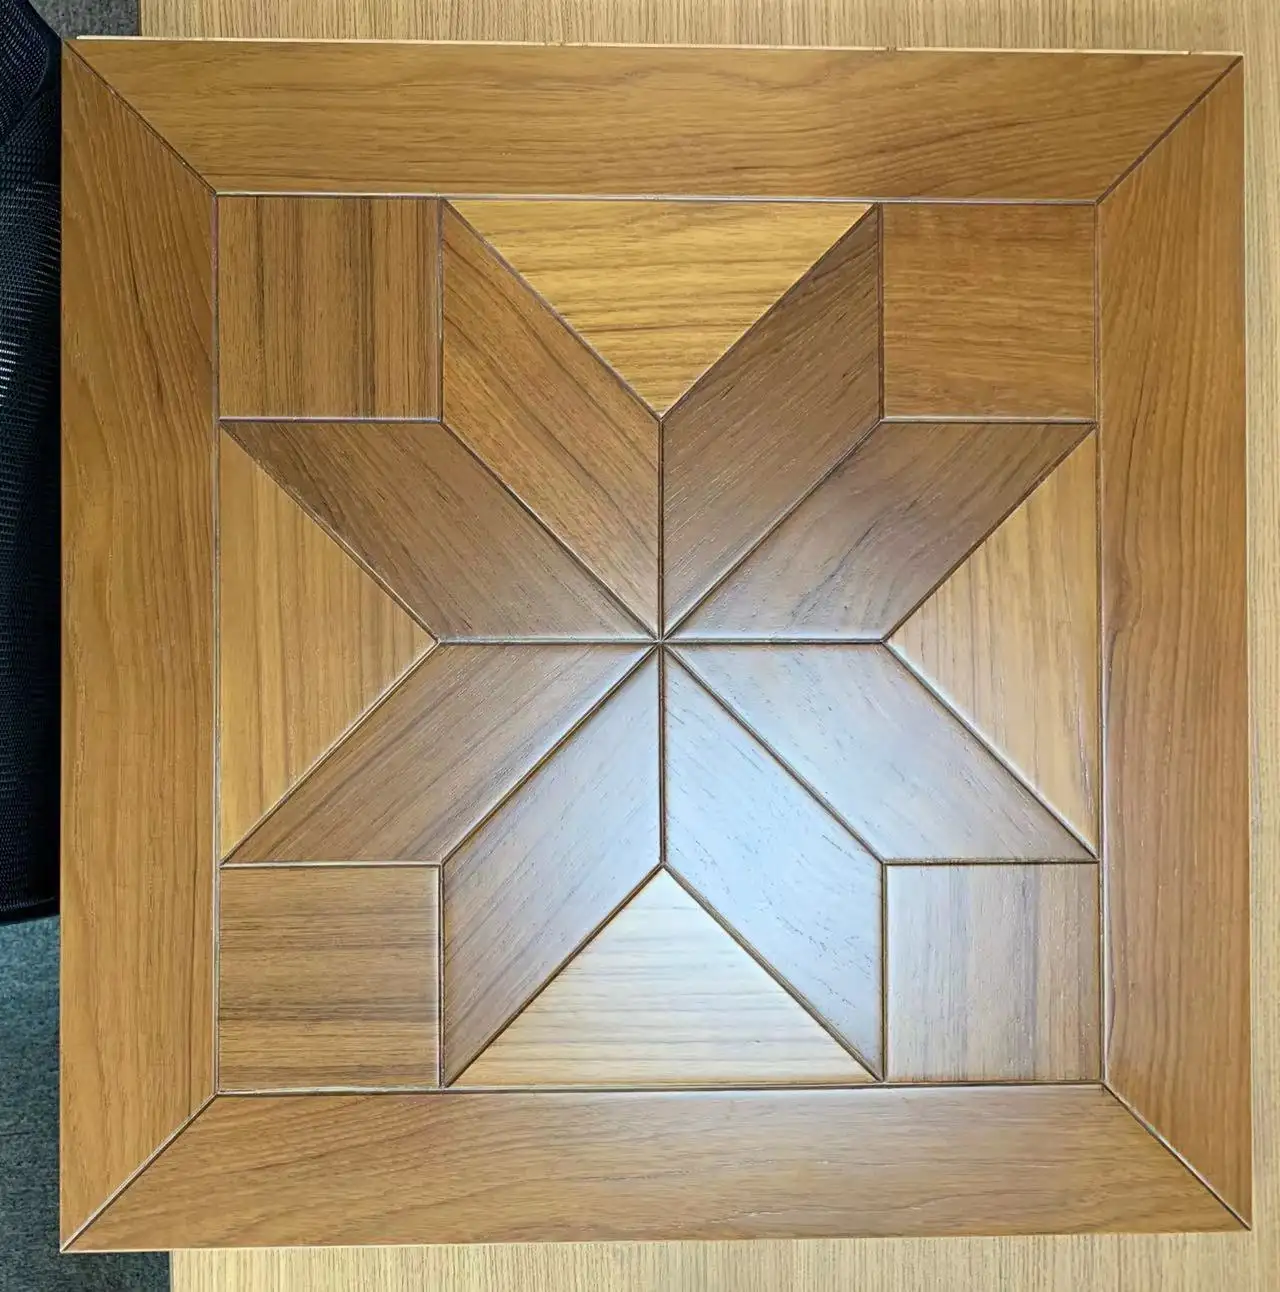 Floor Teak 12x12 Azulejo de piso de madera Precio barato Suelo de parquet con incrustaciones de madera